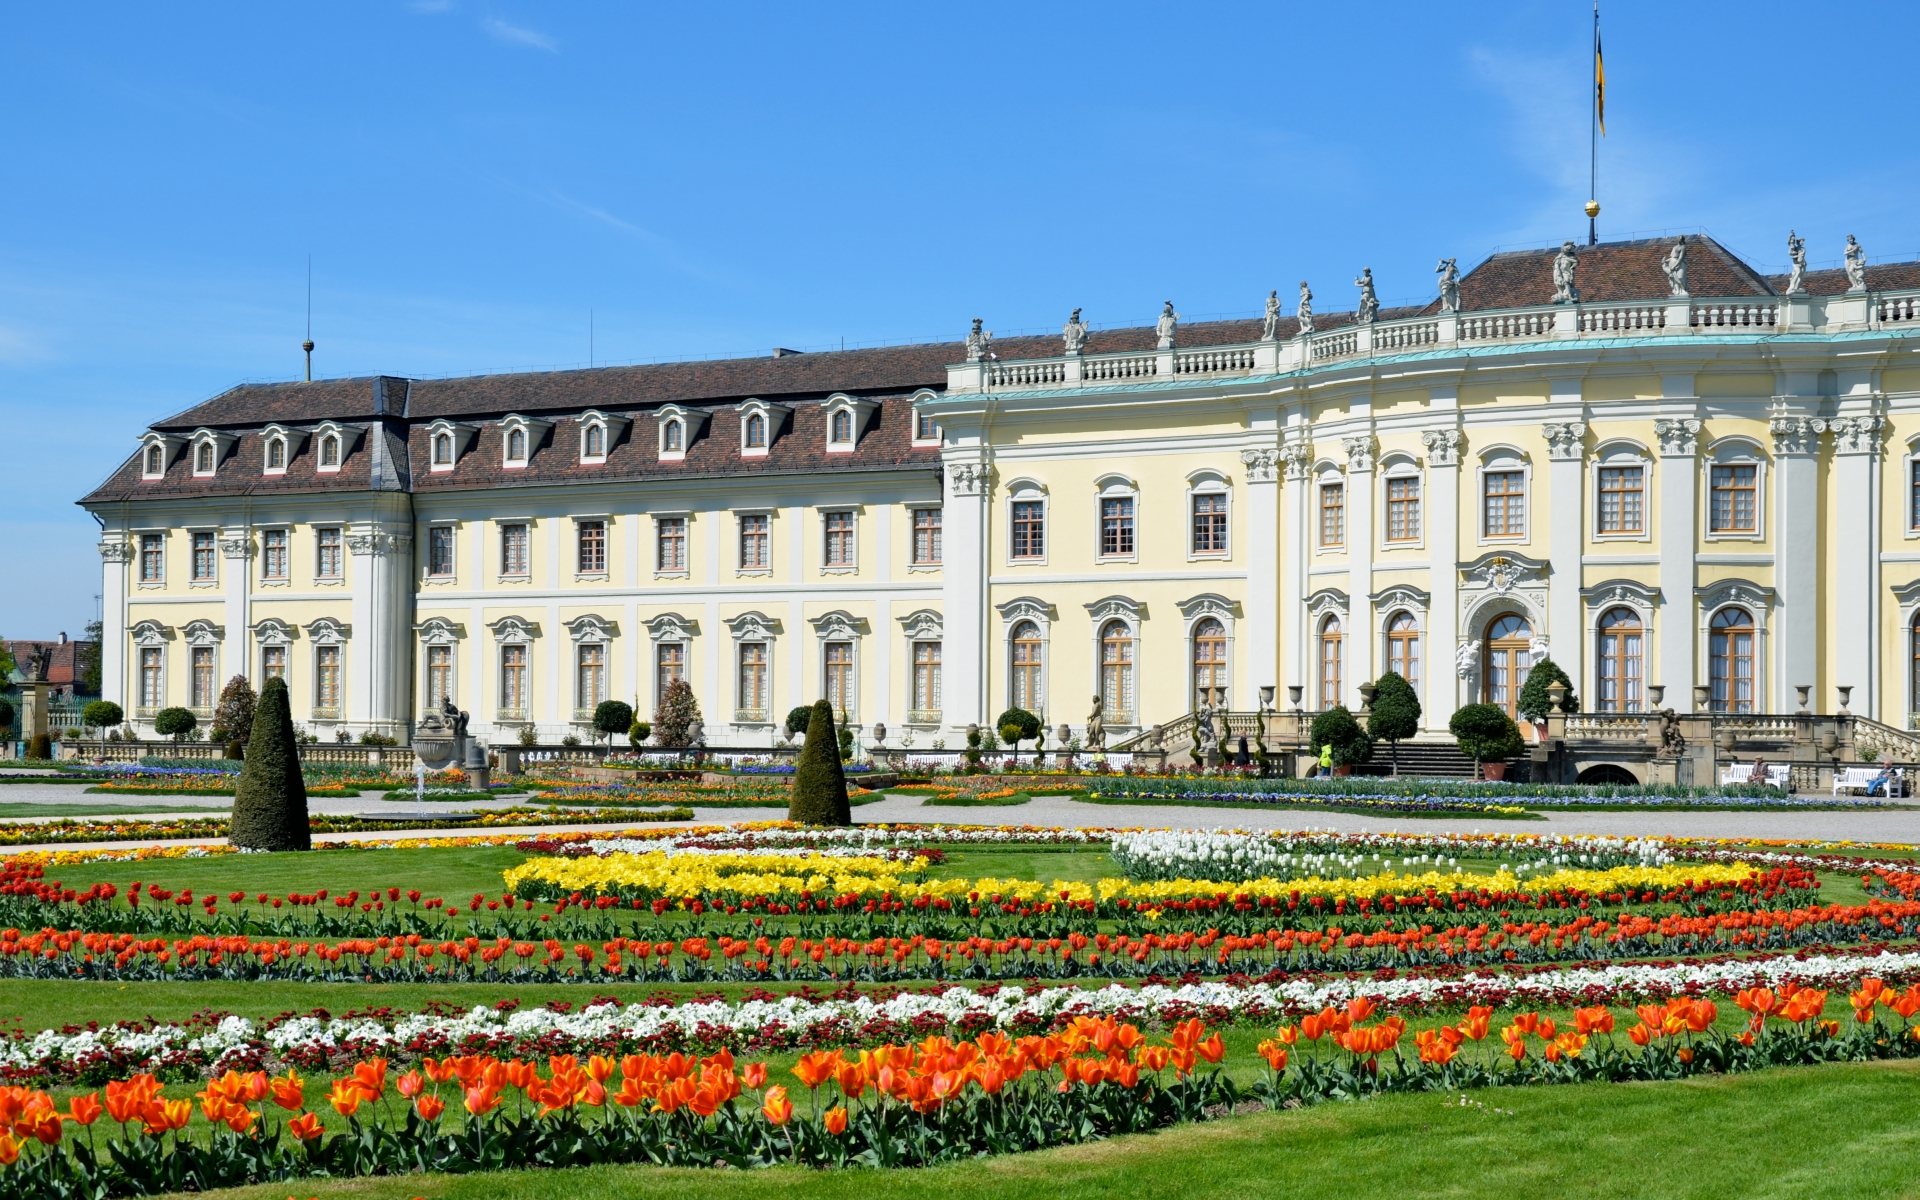 ludwigsburg palace, man made, palaces